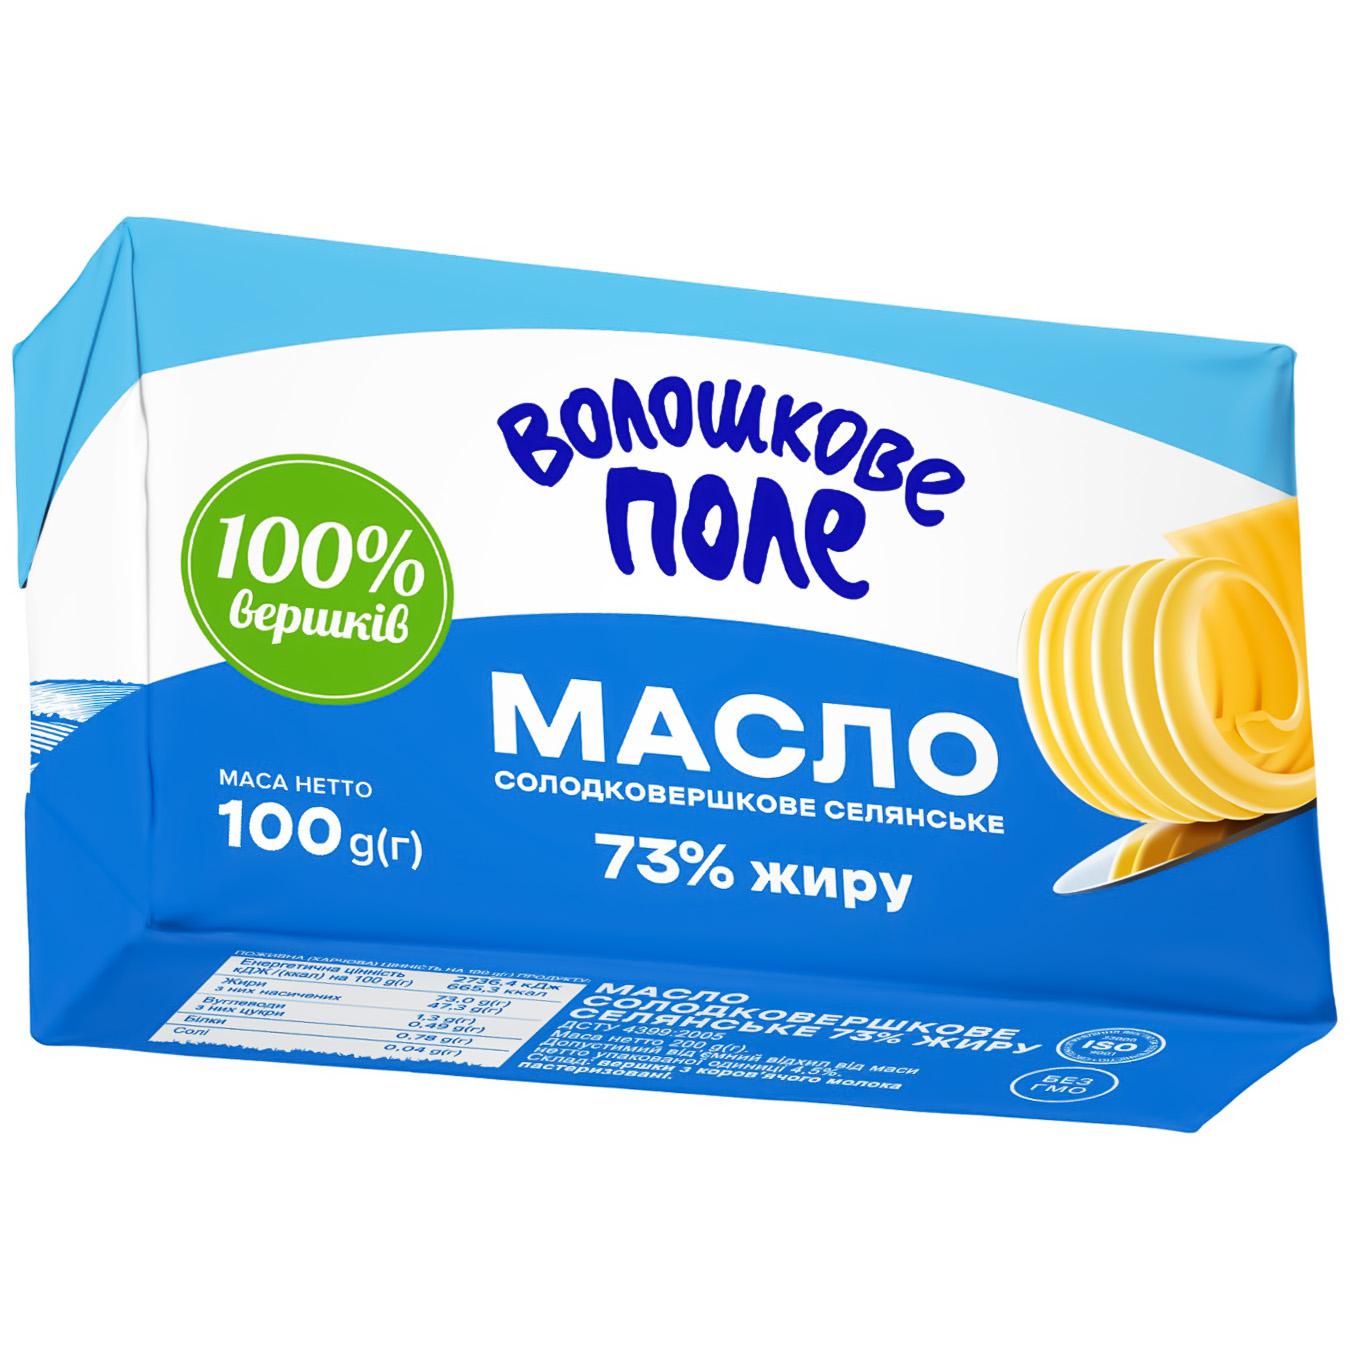 Масло Волошкове Поле Селянське солодковершкове 73% 100г